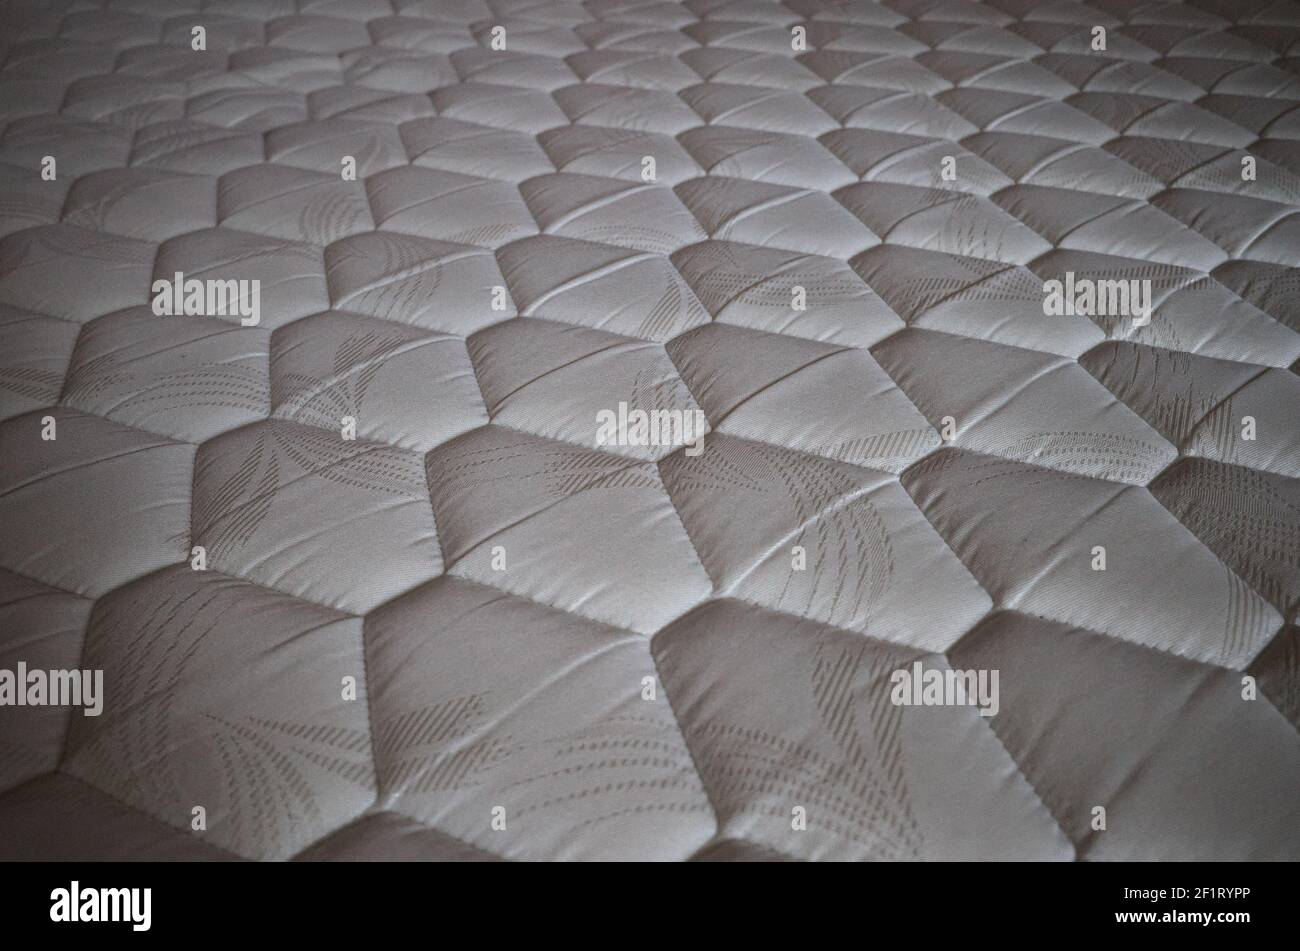 A diamond pattern on a orthopedic mattress close-up. Mattress fabric close up. Light color mattress with a rhombus pattern. Stock Photo